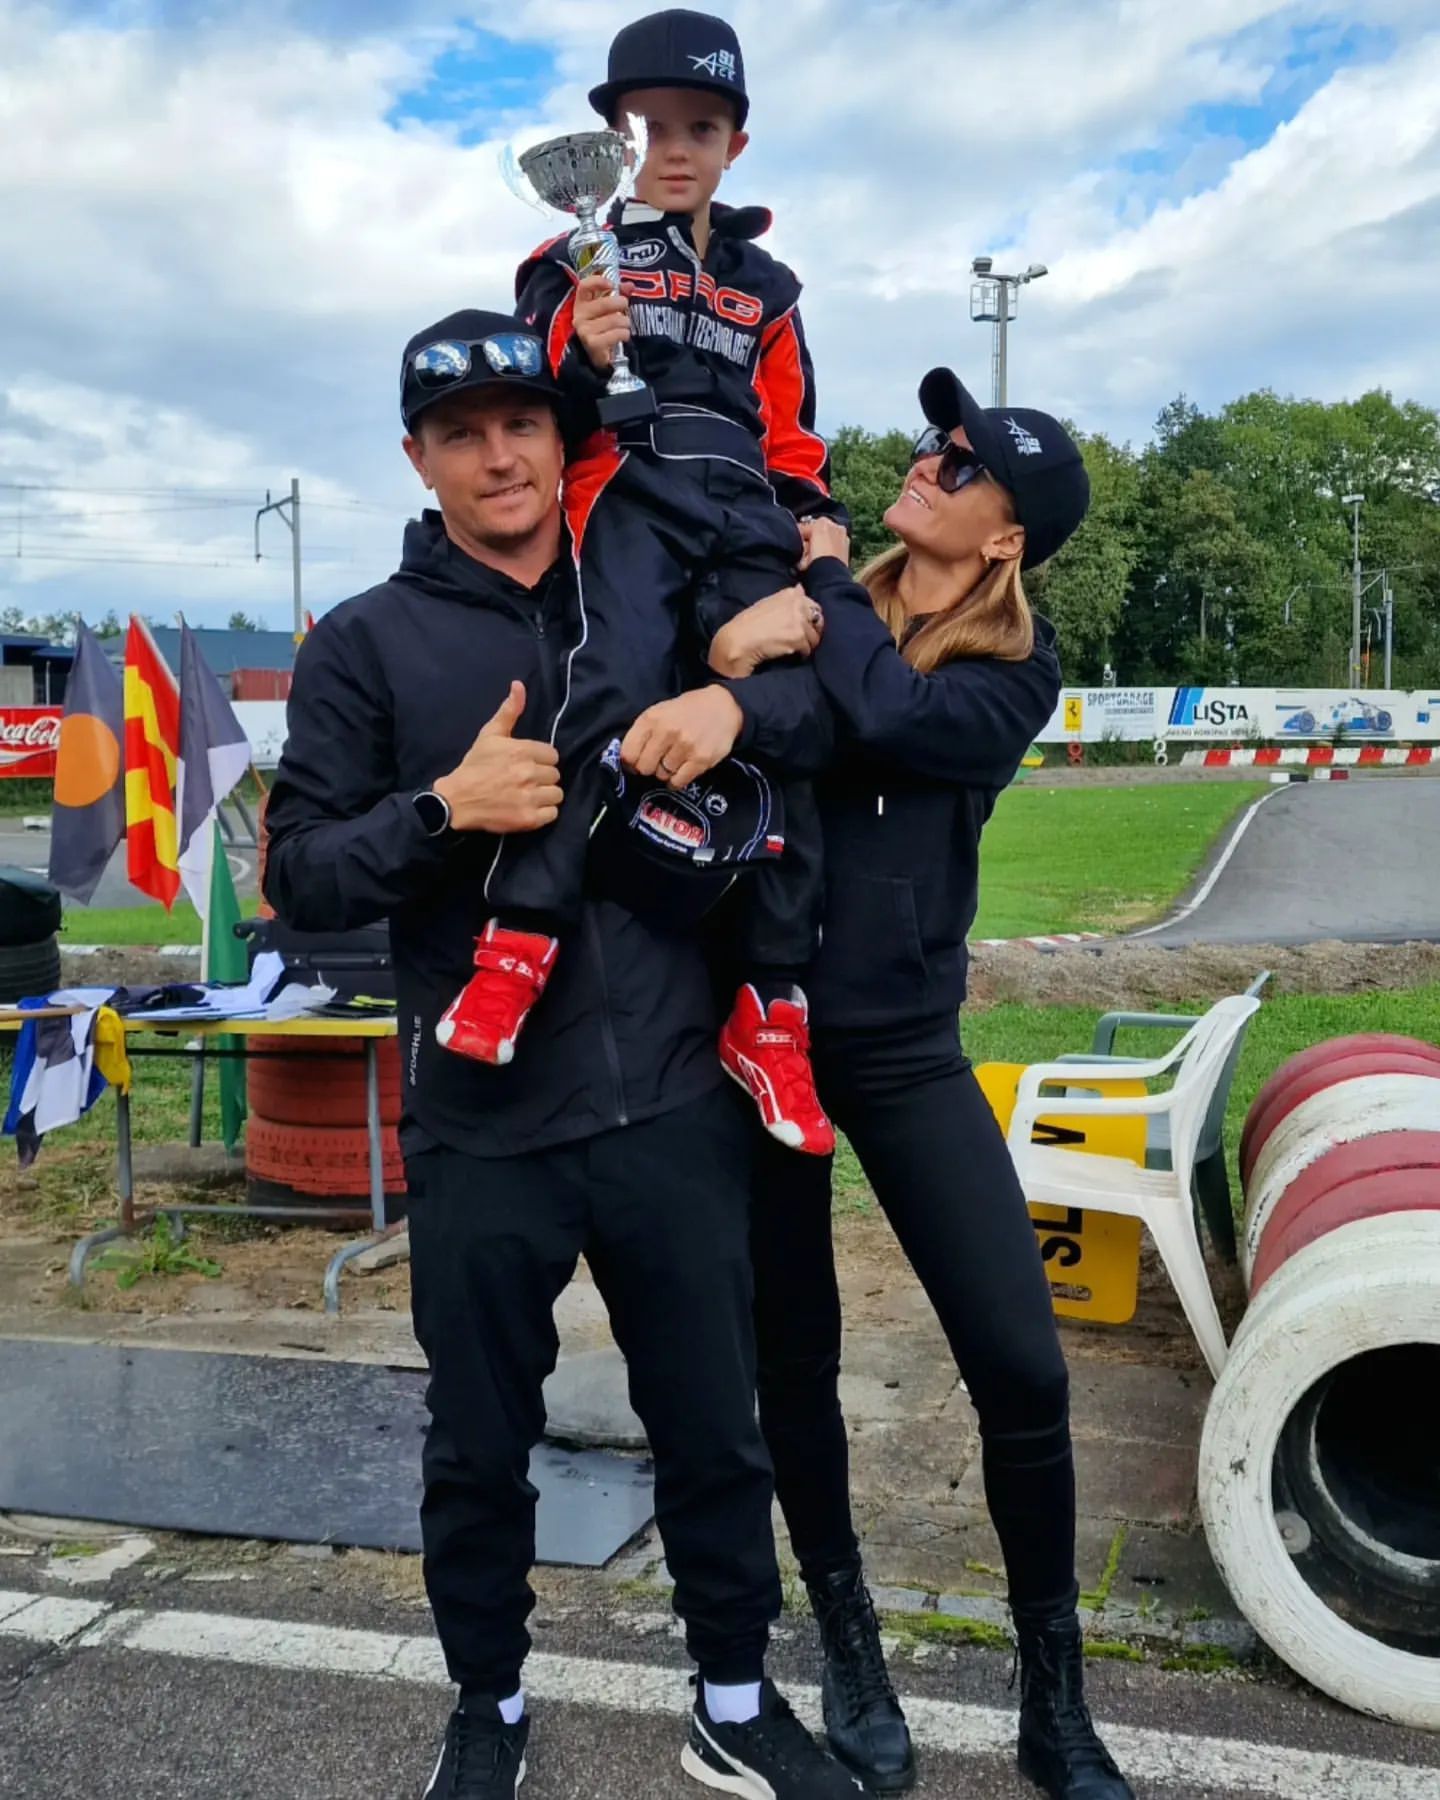 Szülei nagyon büszkék a gokartversenyeken jeleskedő fiúra /Fotó: Kimi Räikkönen/Instagram